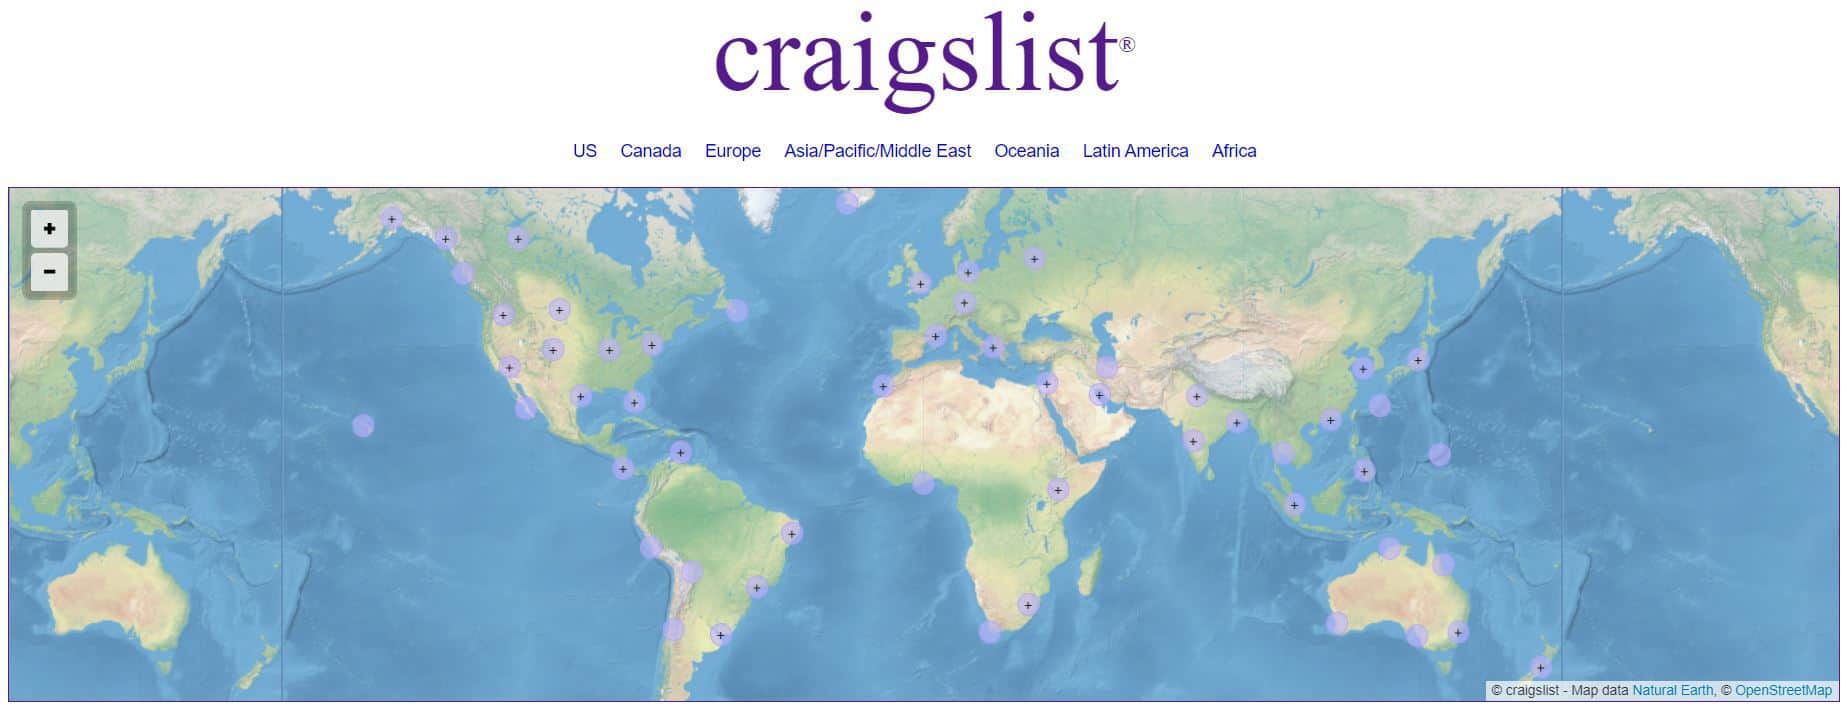 craigslist homepage